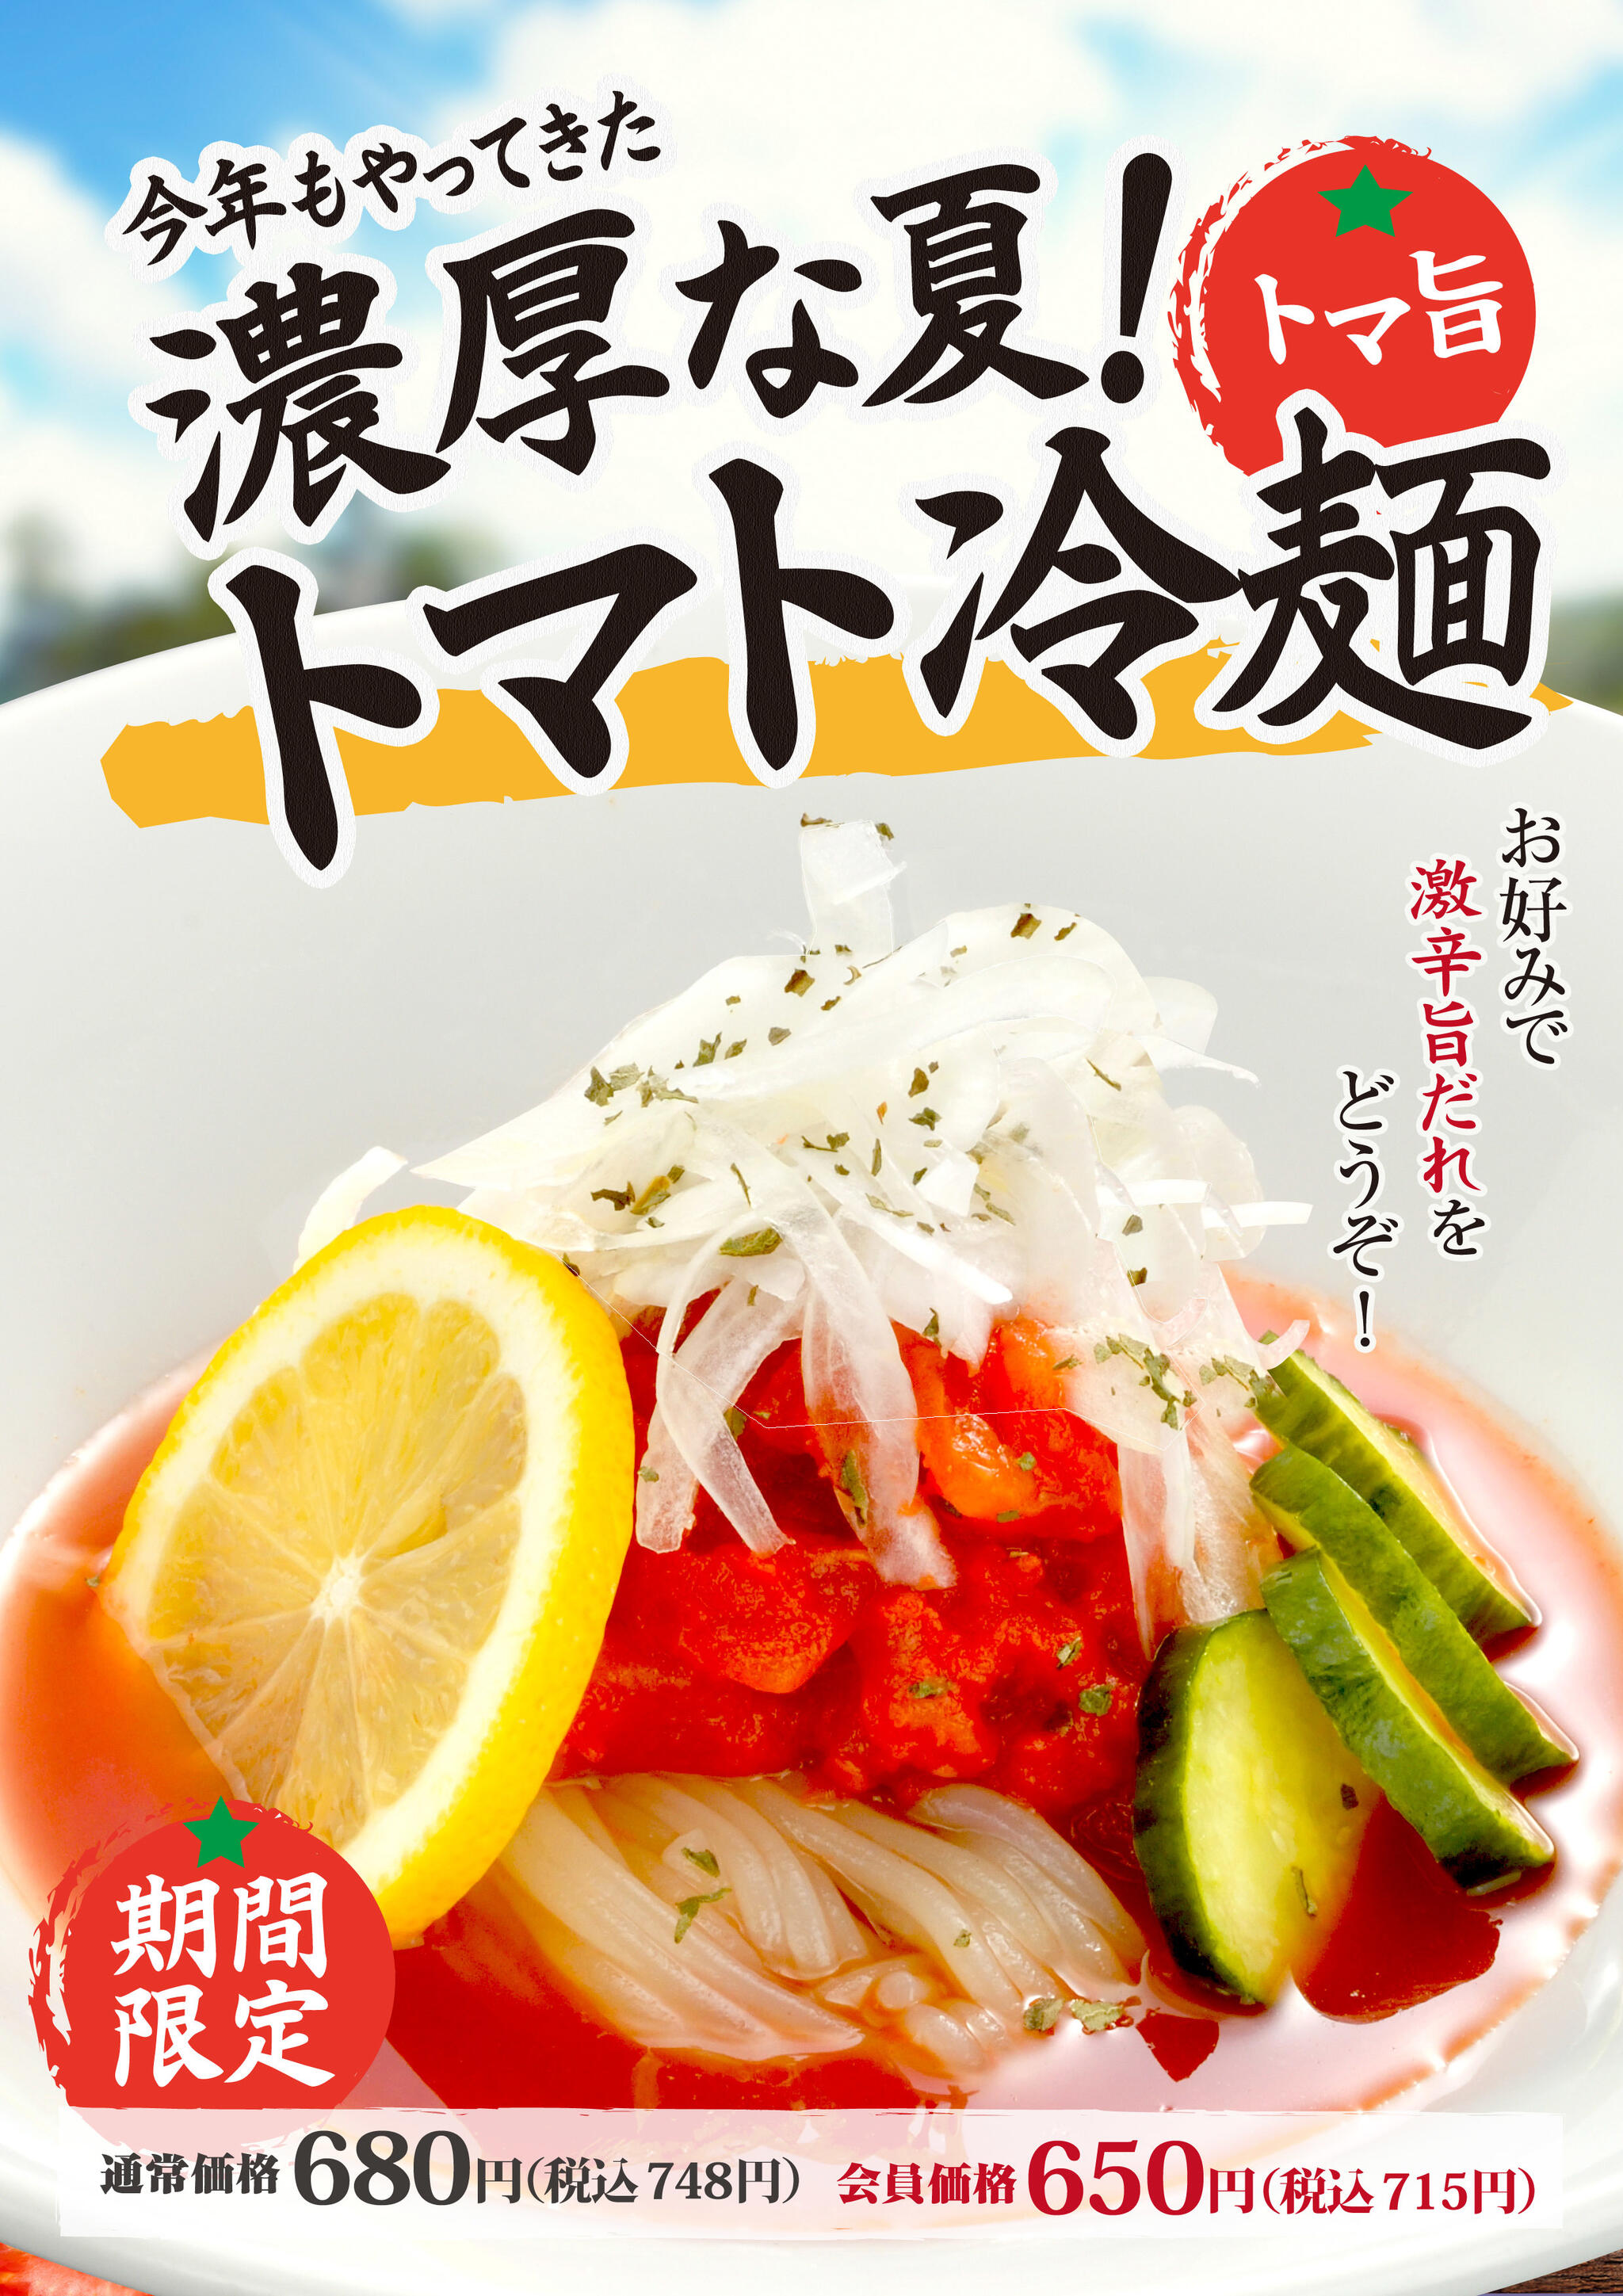 焼肉冷麺やまなか家 泉松森店からのお知らせ(今年もやってきました🍅🍋🍅トマト冷麺🍅🍋🍅❕)に関する写真